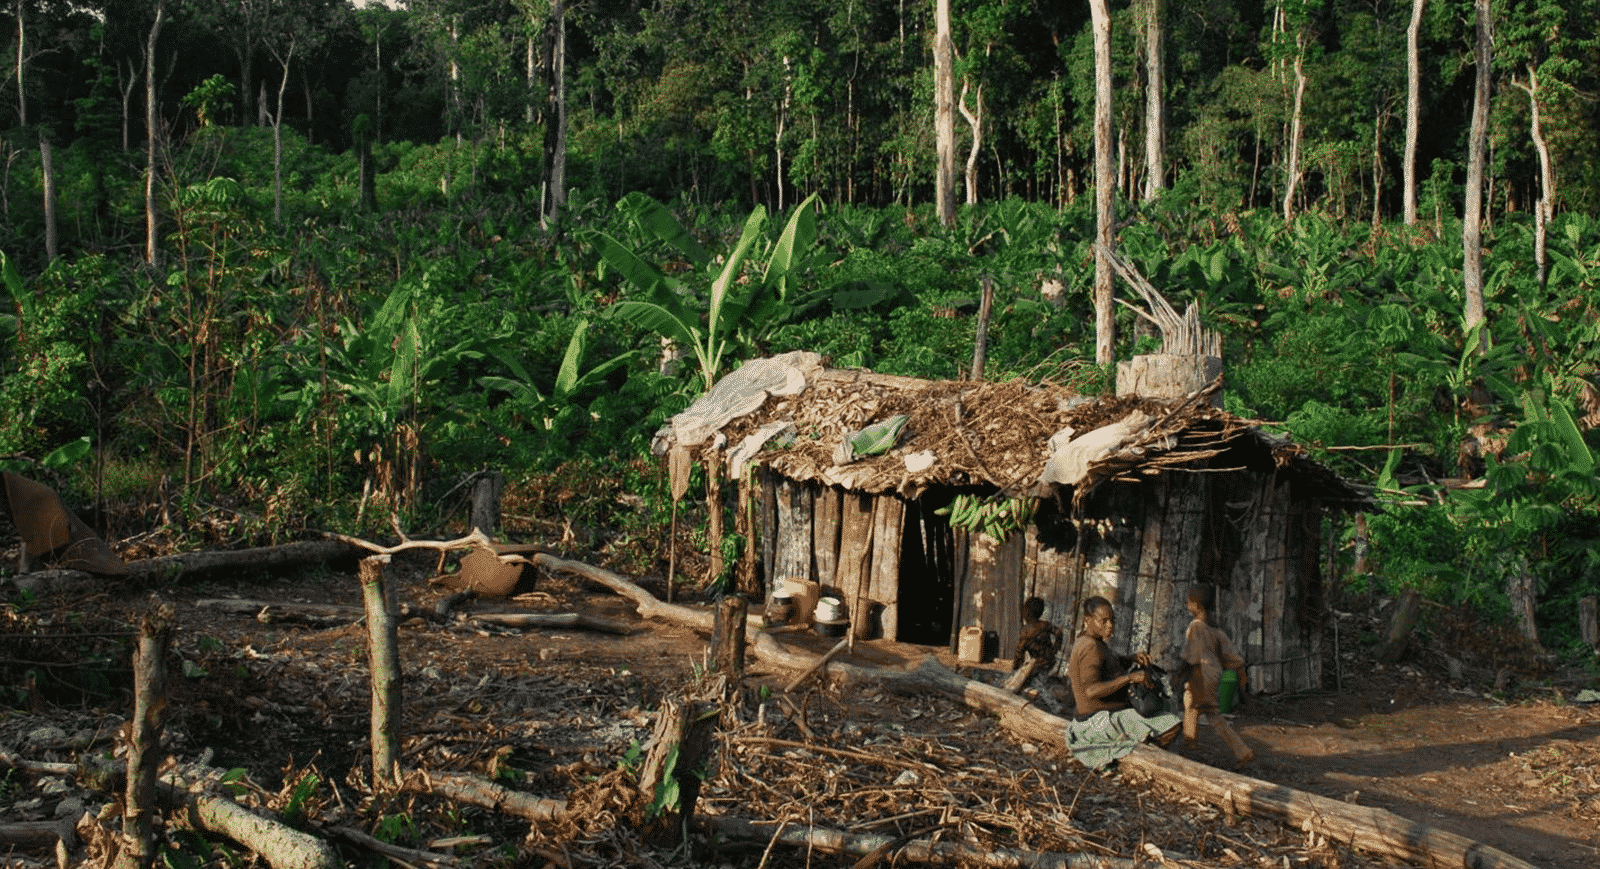 Floresta do Congo - Principais características, riscos e importância